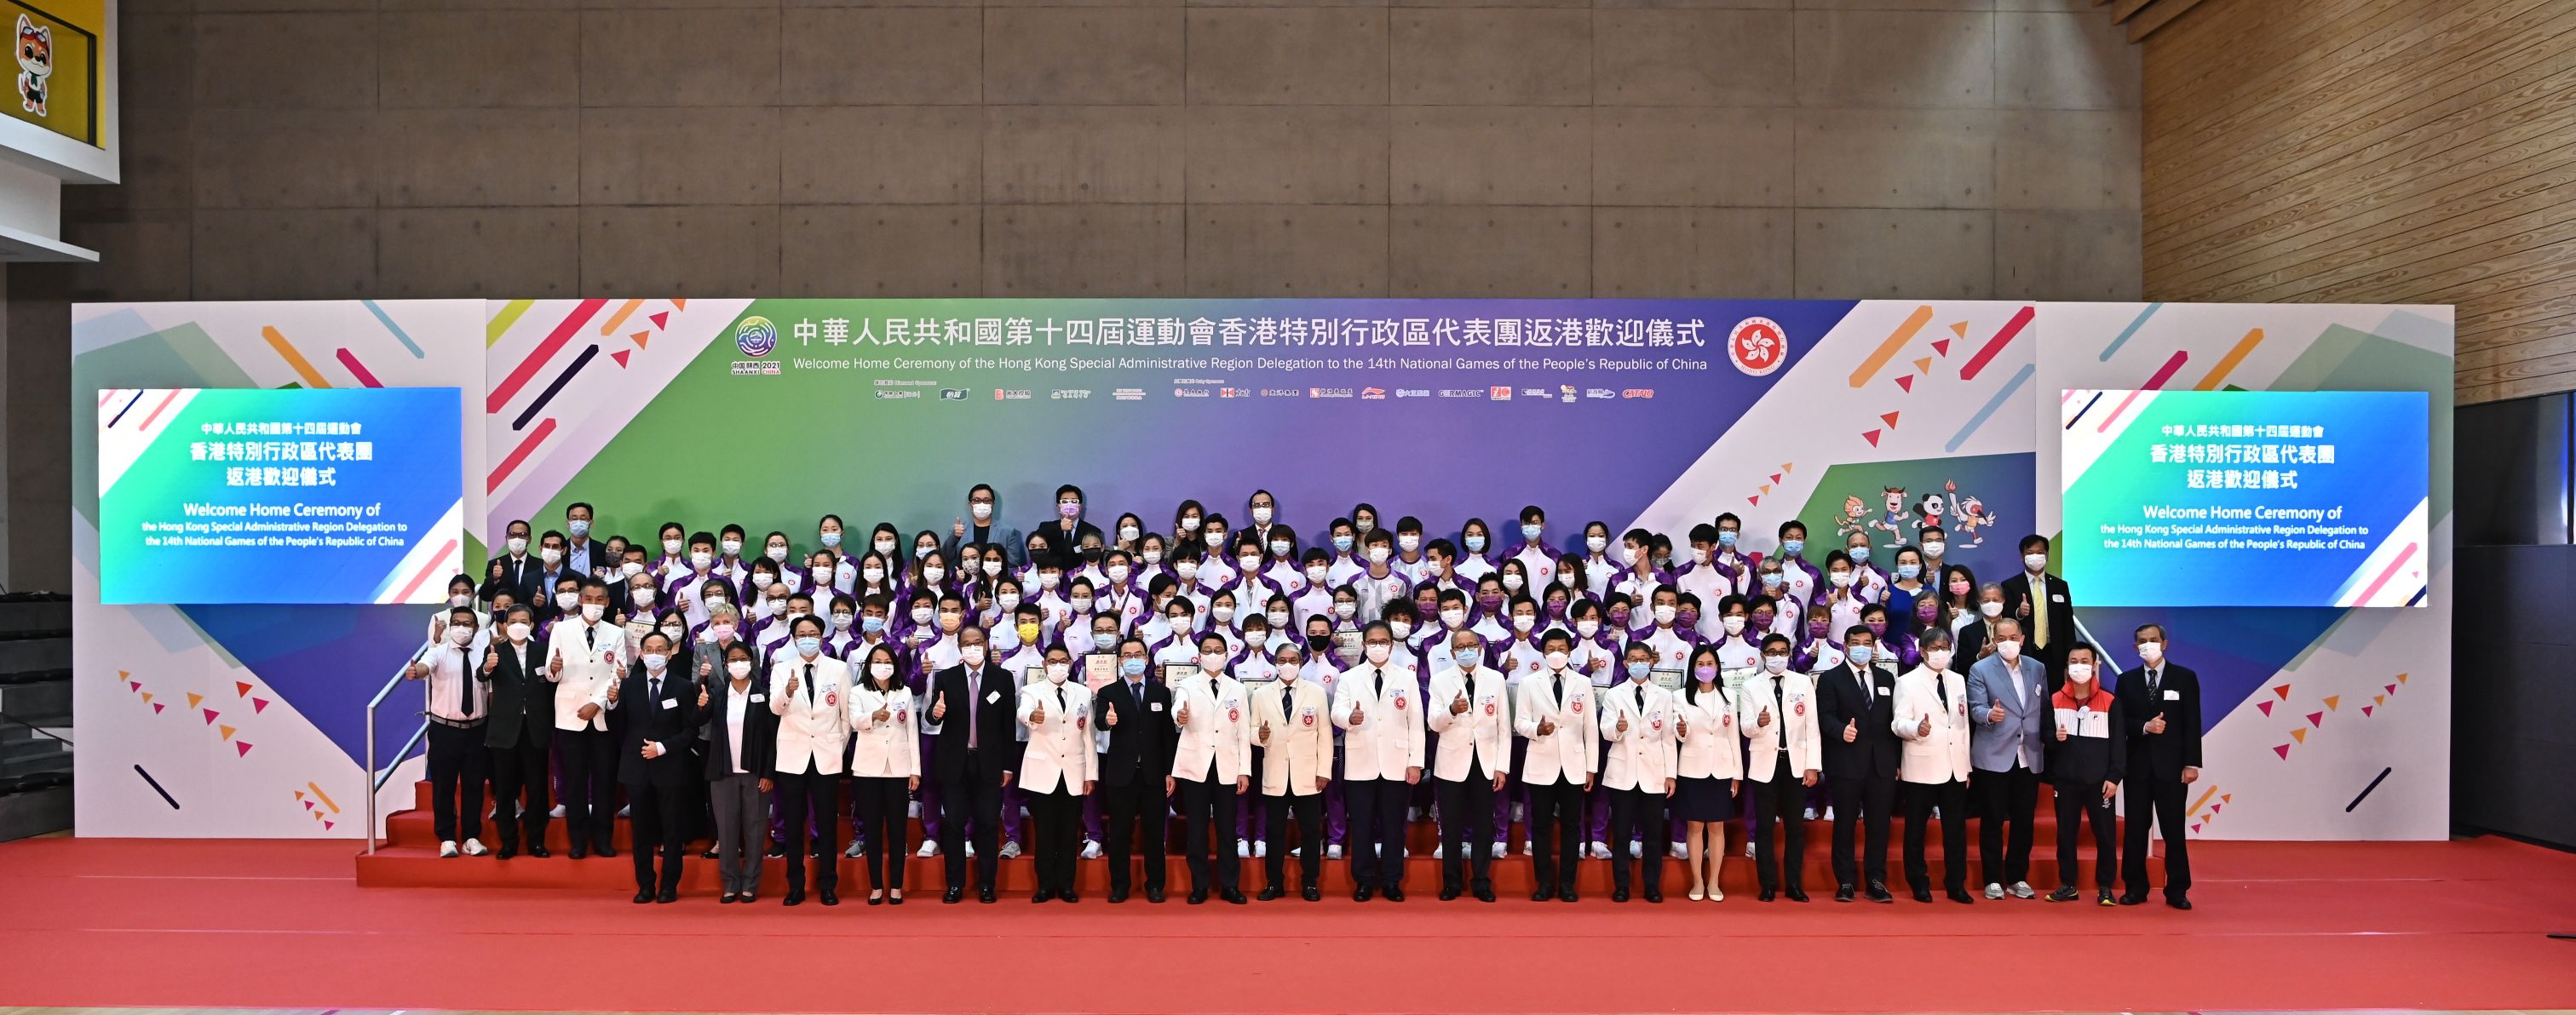 出席嘉賓於返港歡迎儀式與第十四屆全國運動會香港特區代表團成員合照。